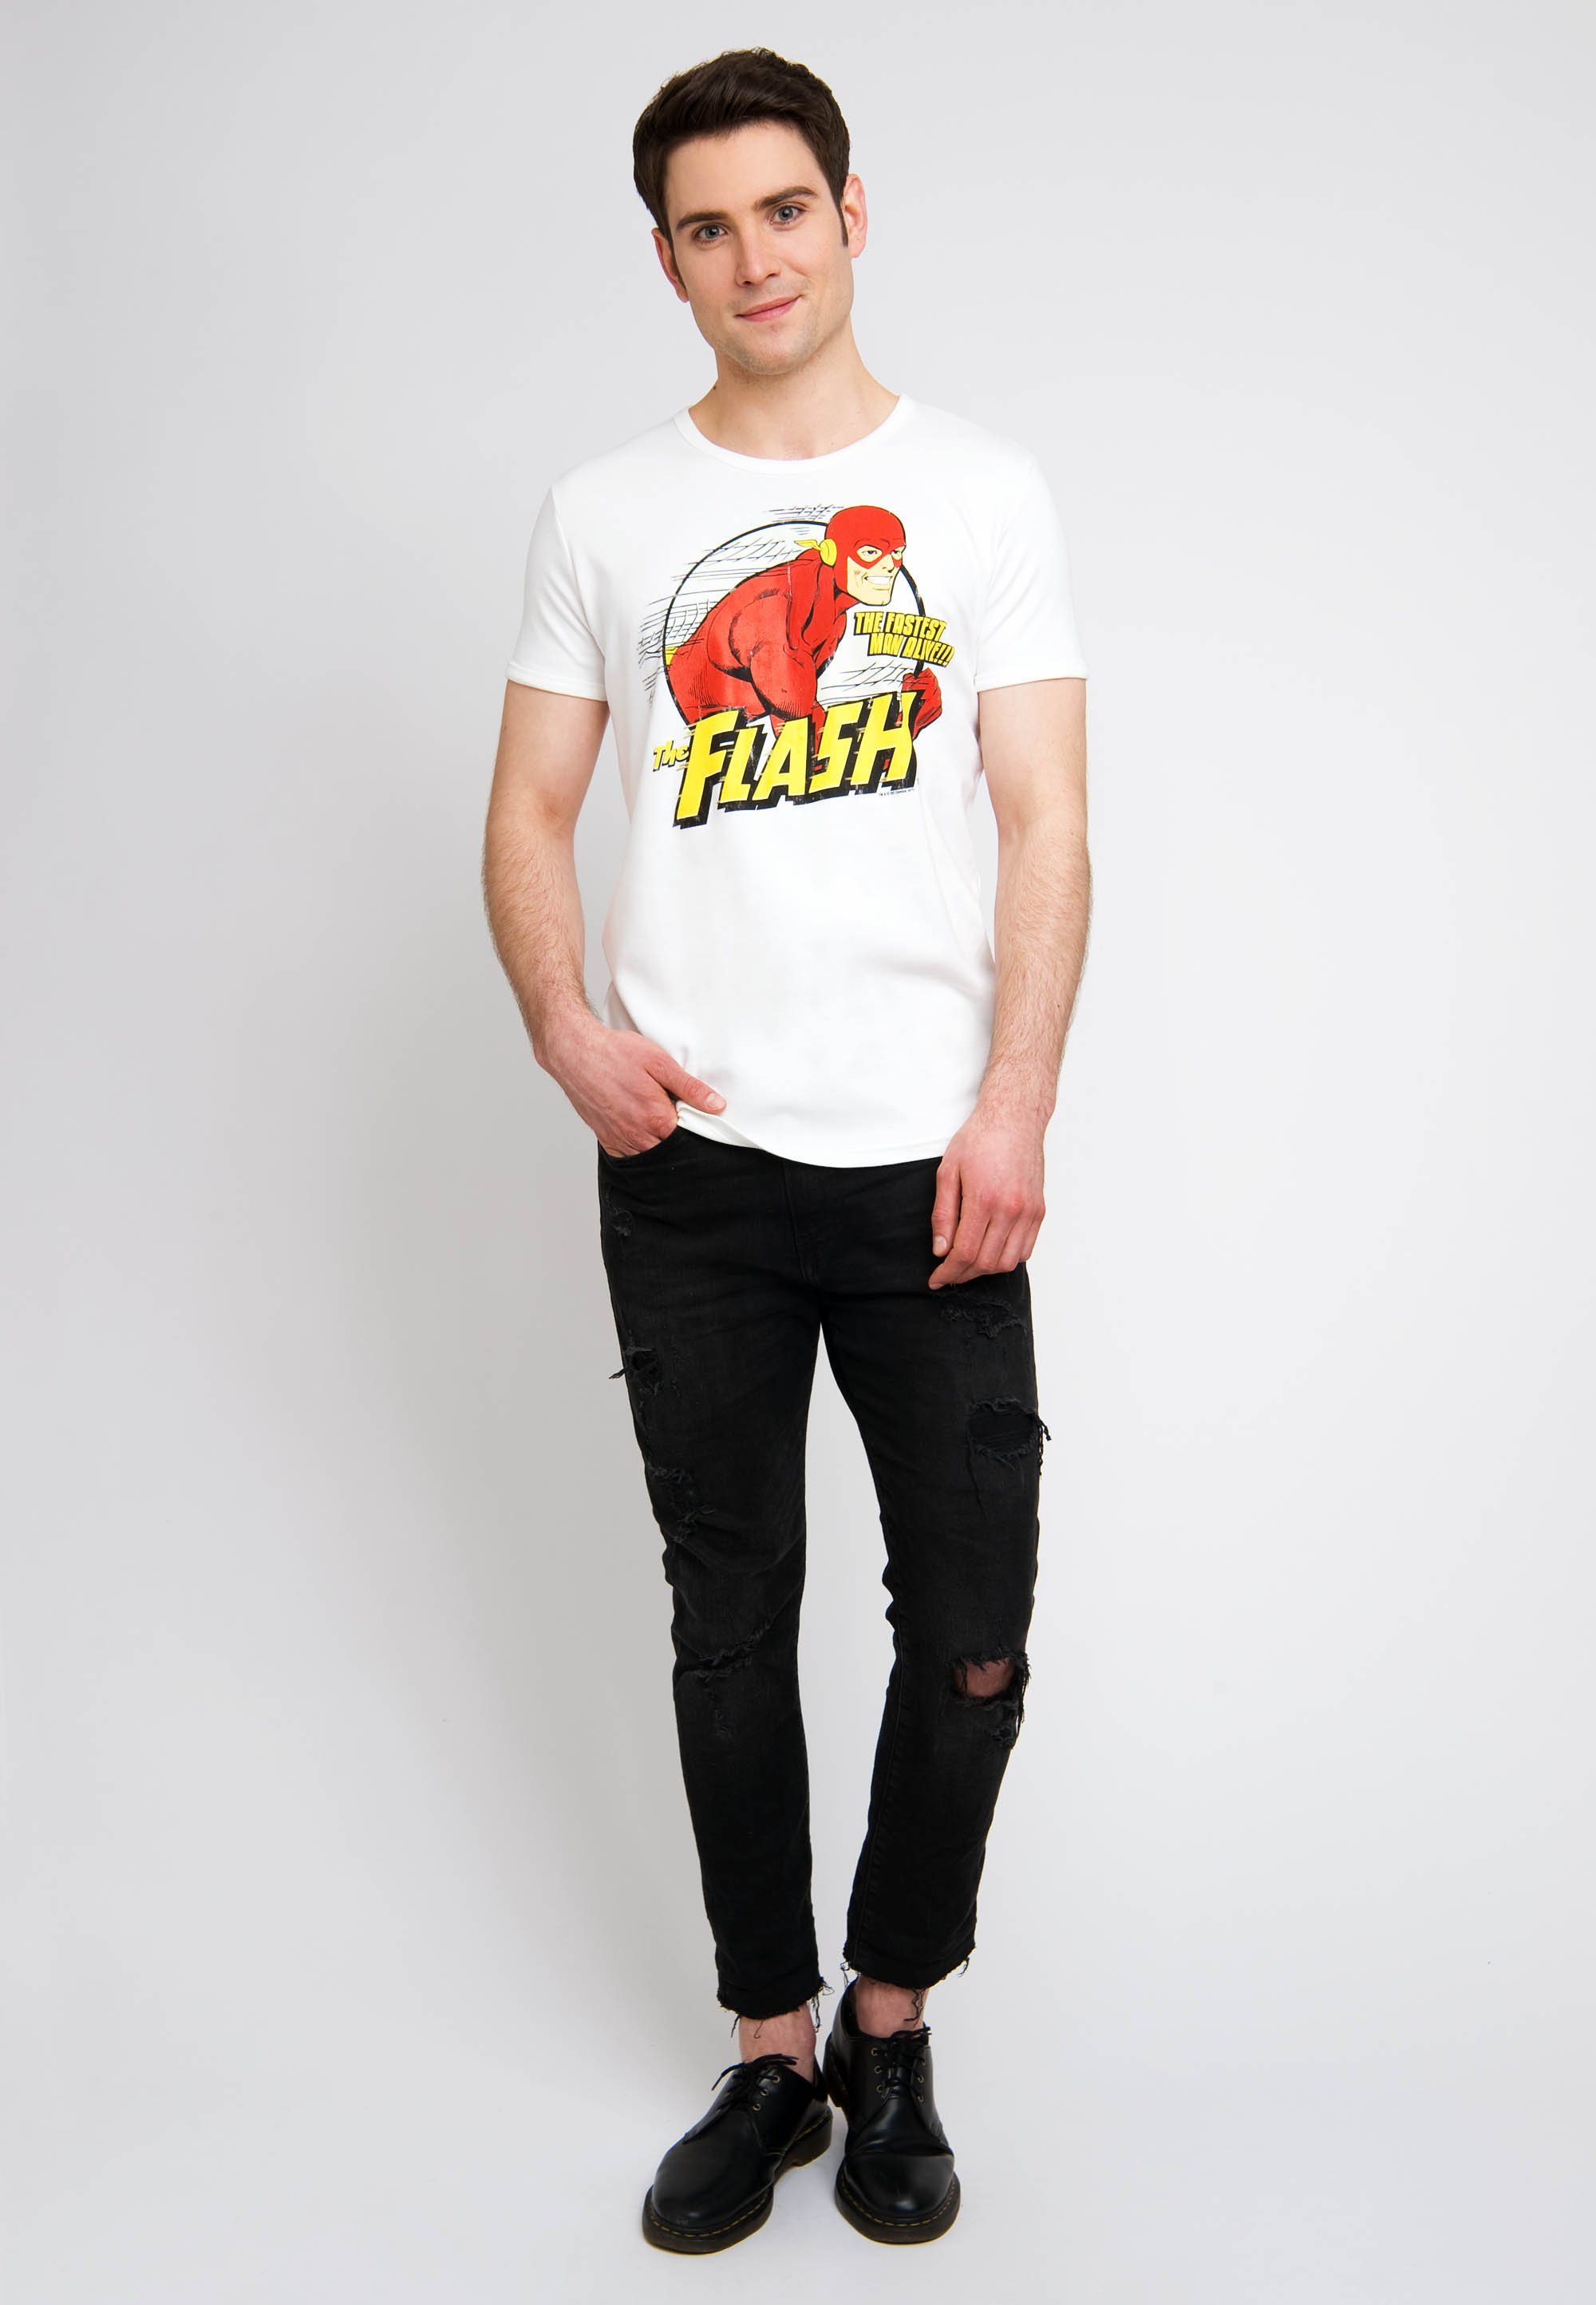 LOGOSHIRT T-Shirt The Alive mit Fastest Man altweiß Flash-Print The tollem